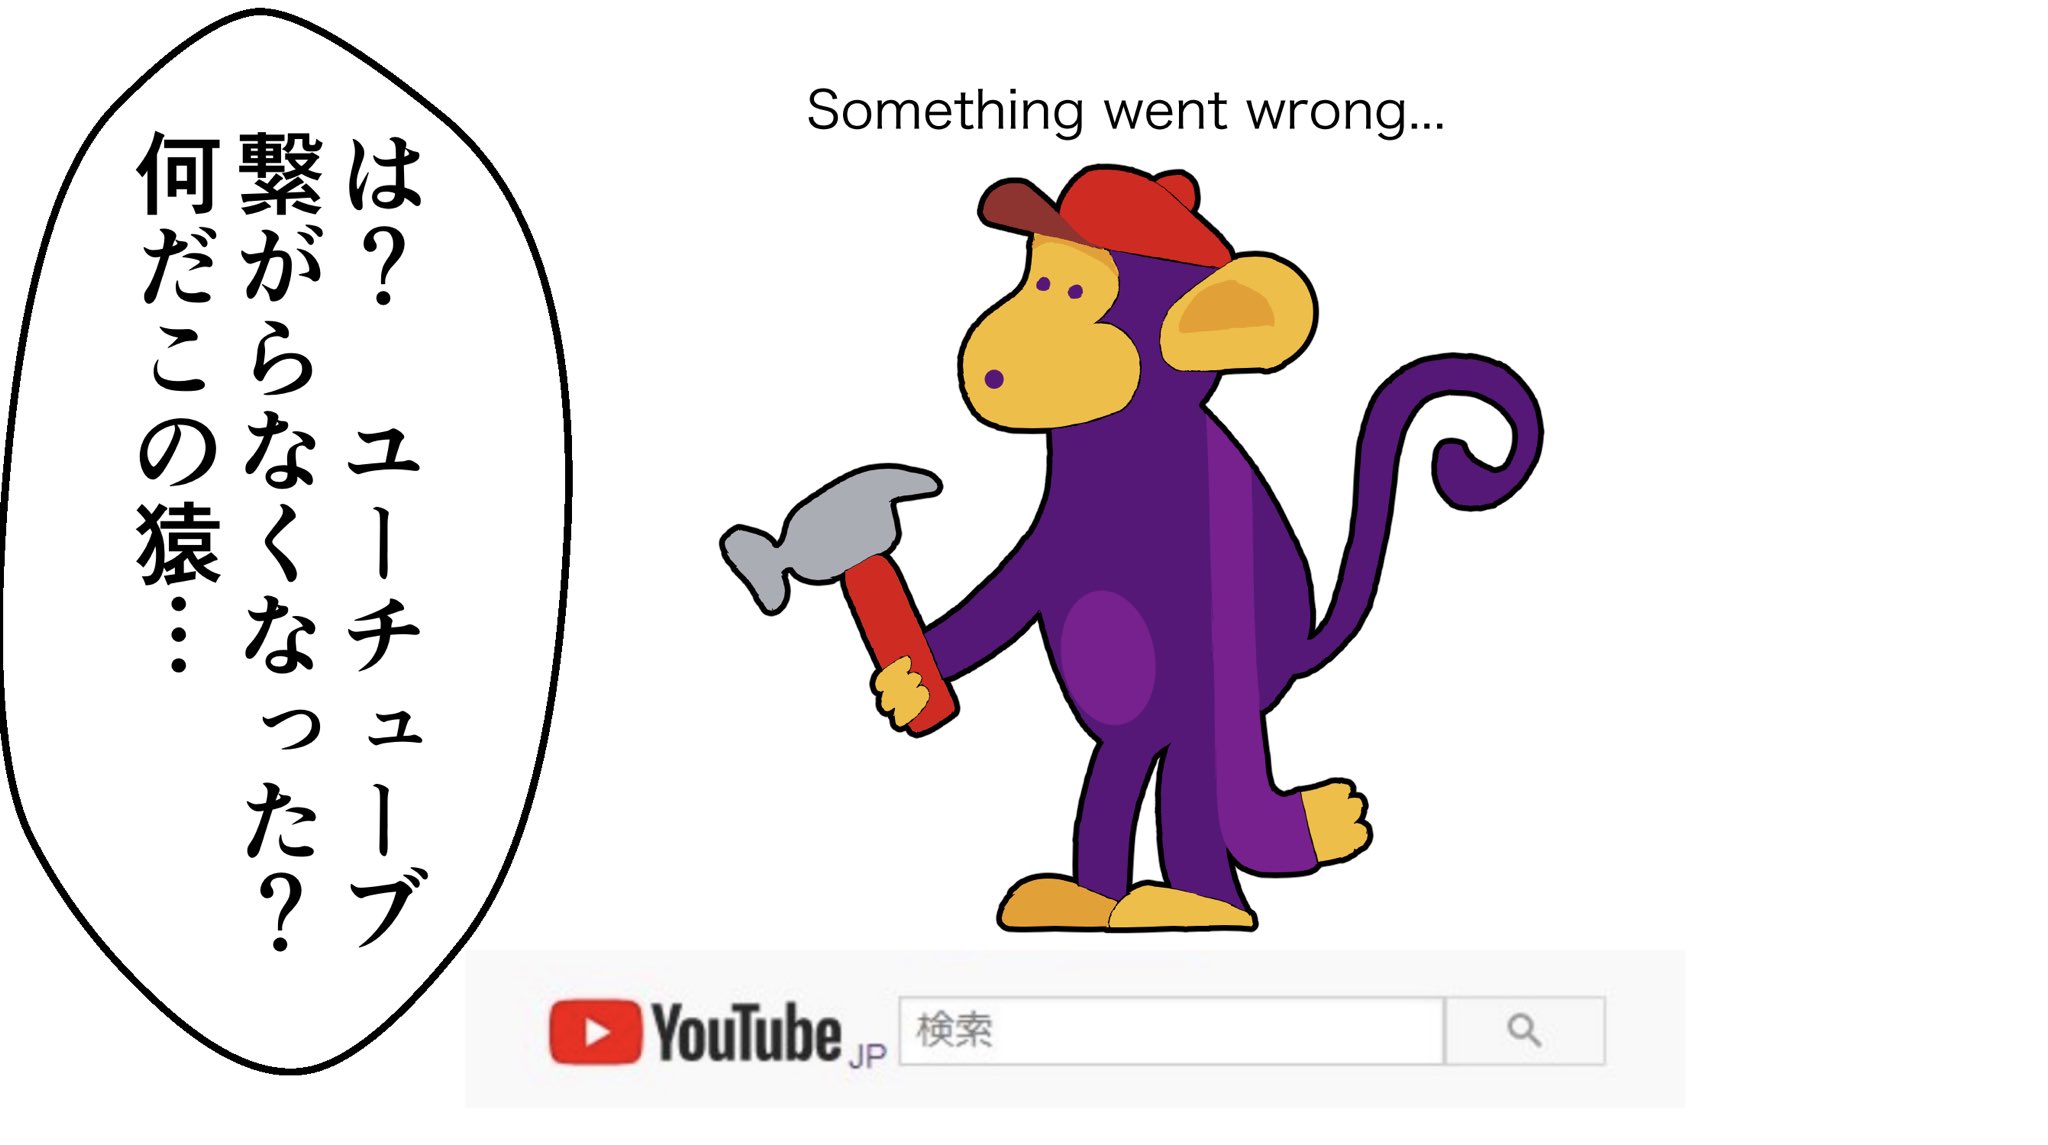 れもん茶 Youtubeが落ちた画面の猿が可愛かったので漫画にしました T Co Q60cllrfyt Twitter